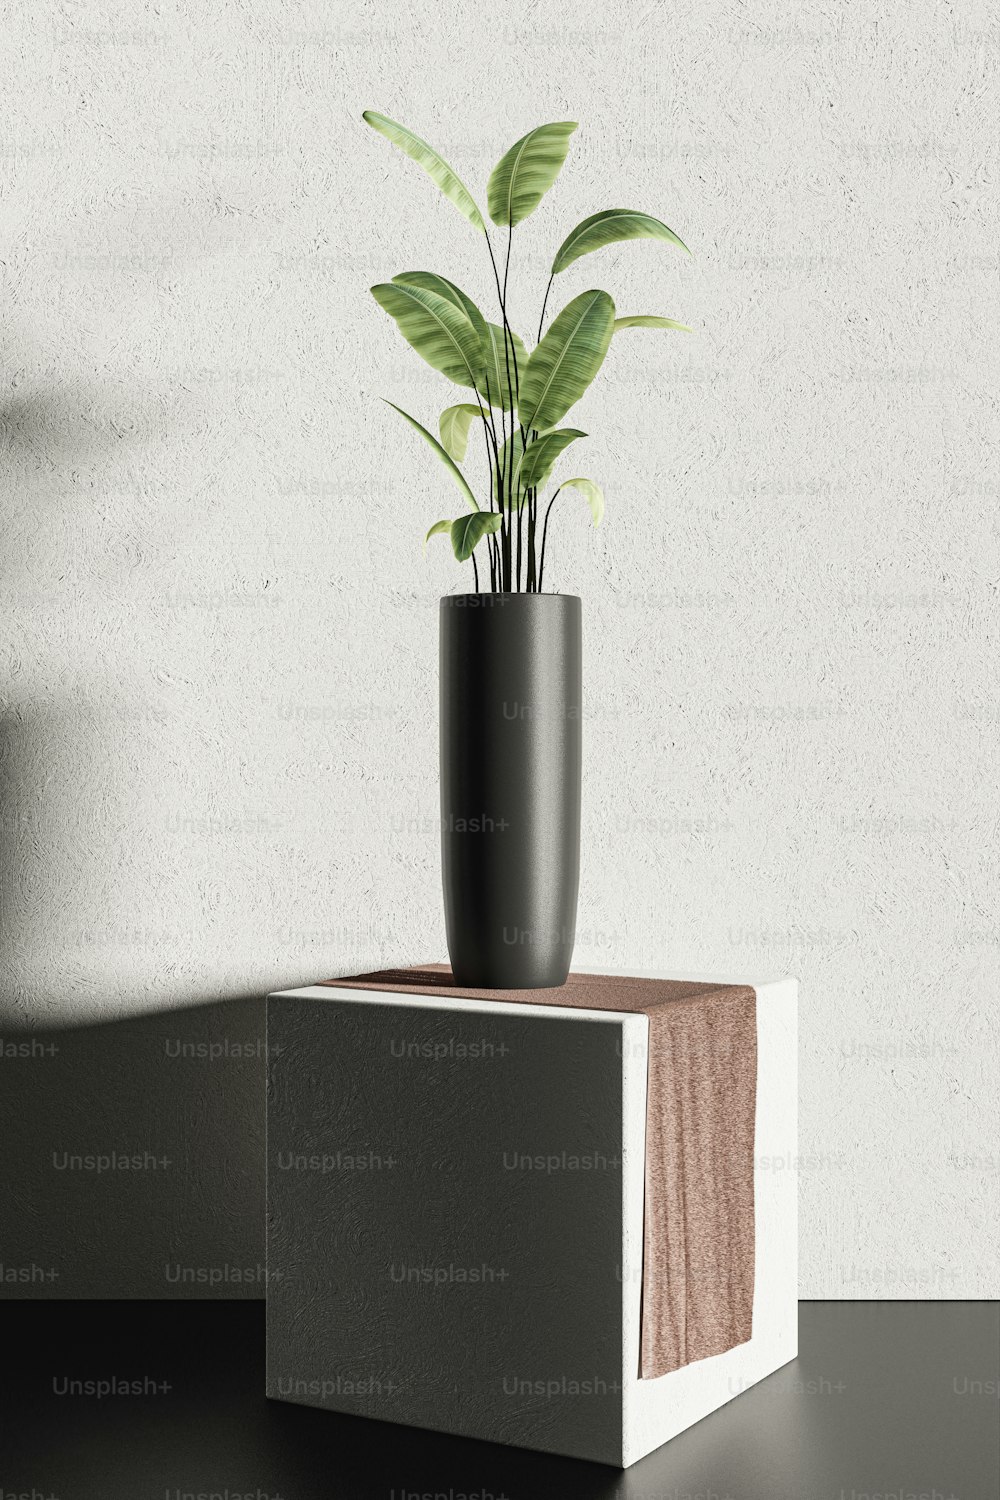 una planta en maceta sentada encima de un bloque de madera